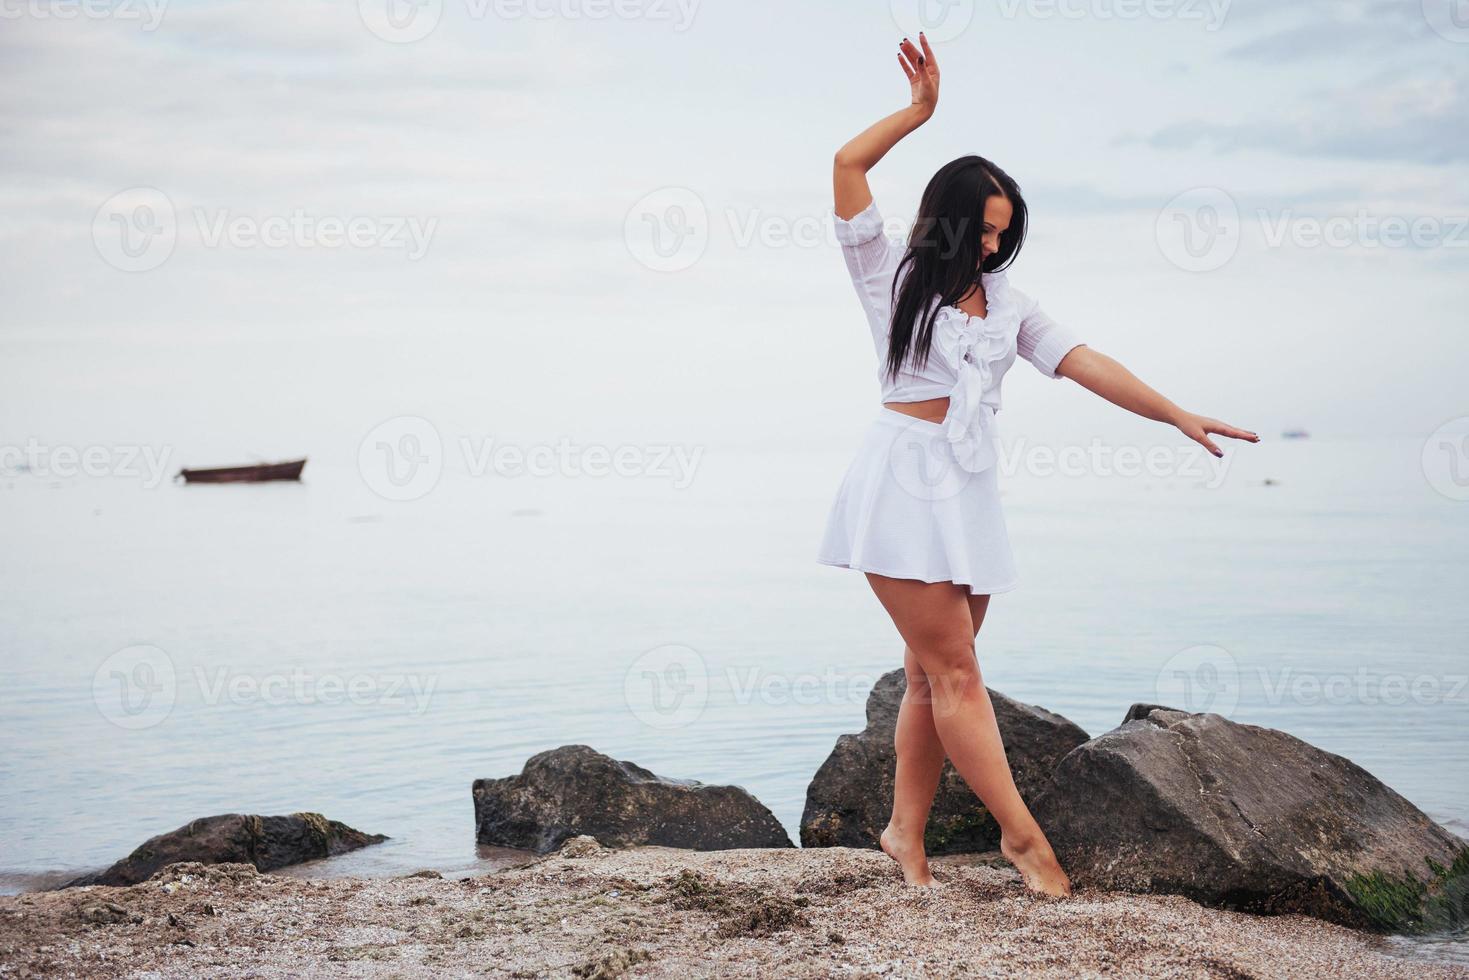 garota de vestido dança com os pés descalços nas mãos da praia de areia foto